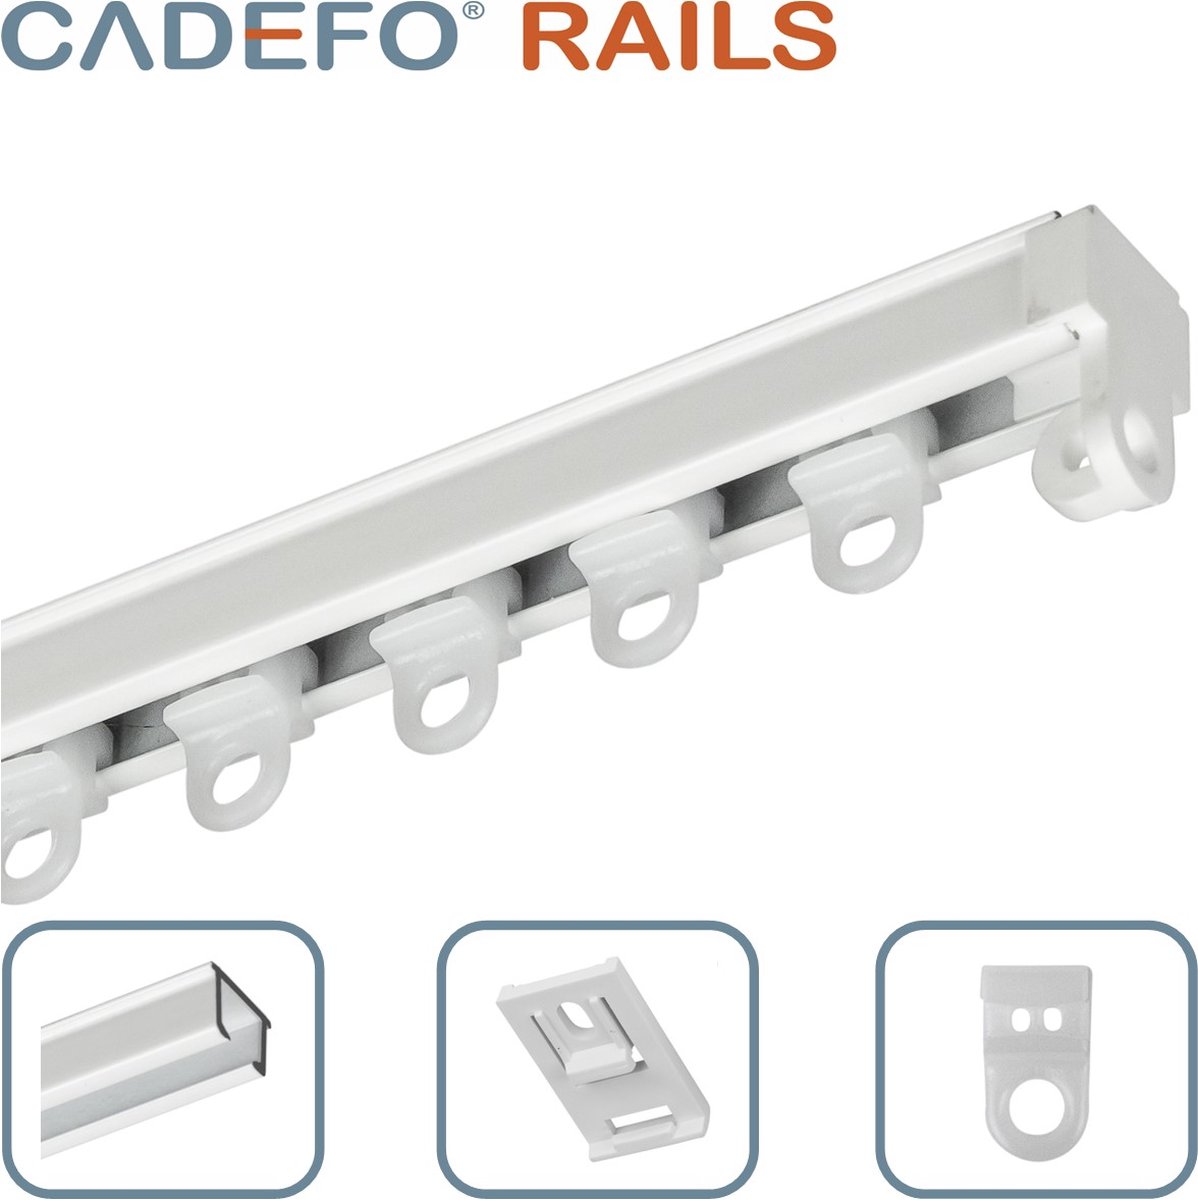 CADEFO RAILS (101 - 150 cm) Gordijnrails - Compleet op maat! - UIT 1 STUK - Leverbaar tot 6 meter - Plafondbevestiging - Lengte 128 cm